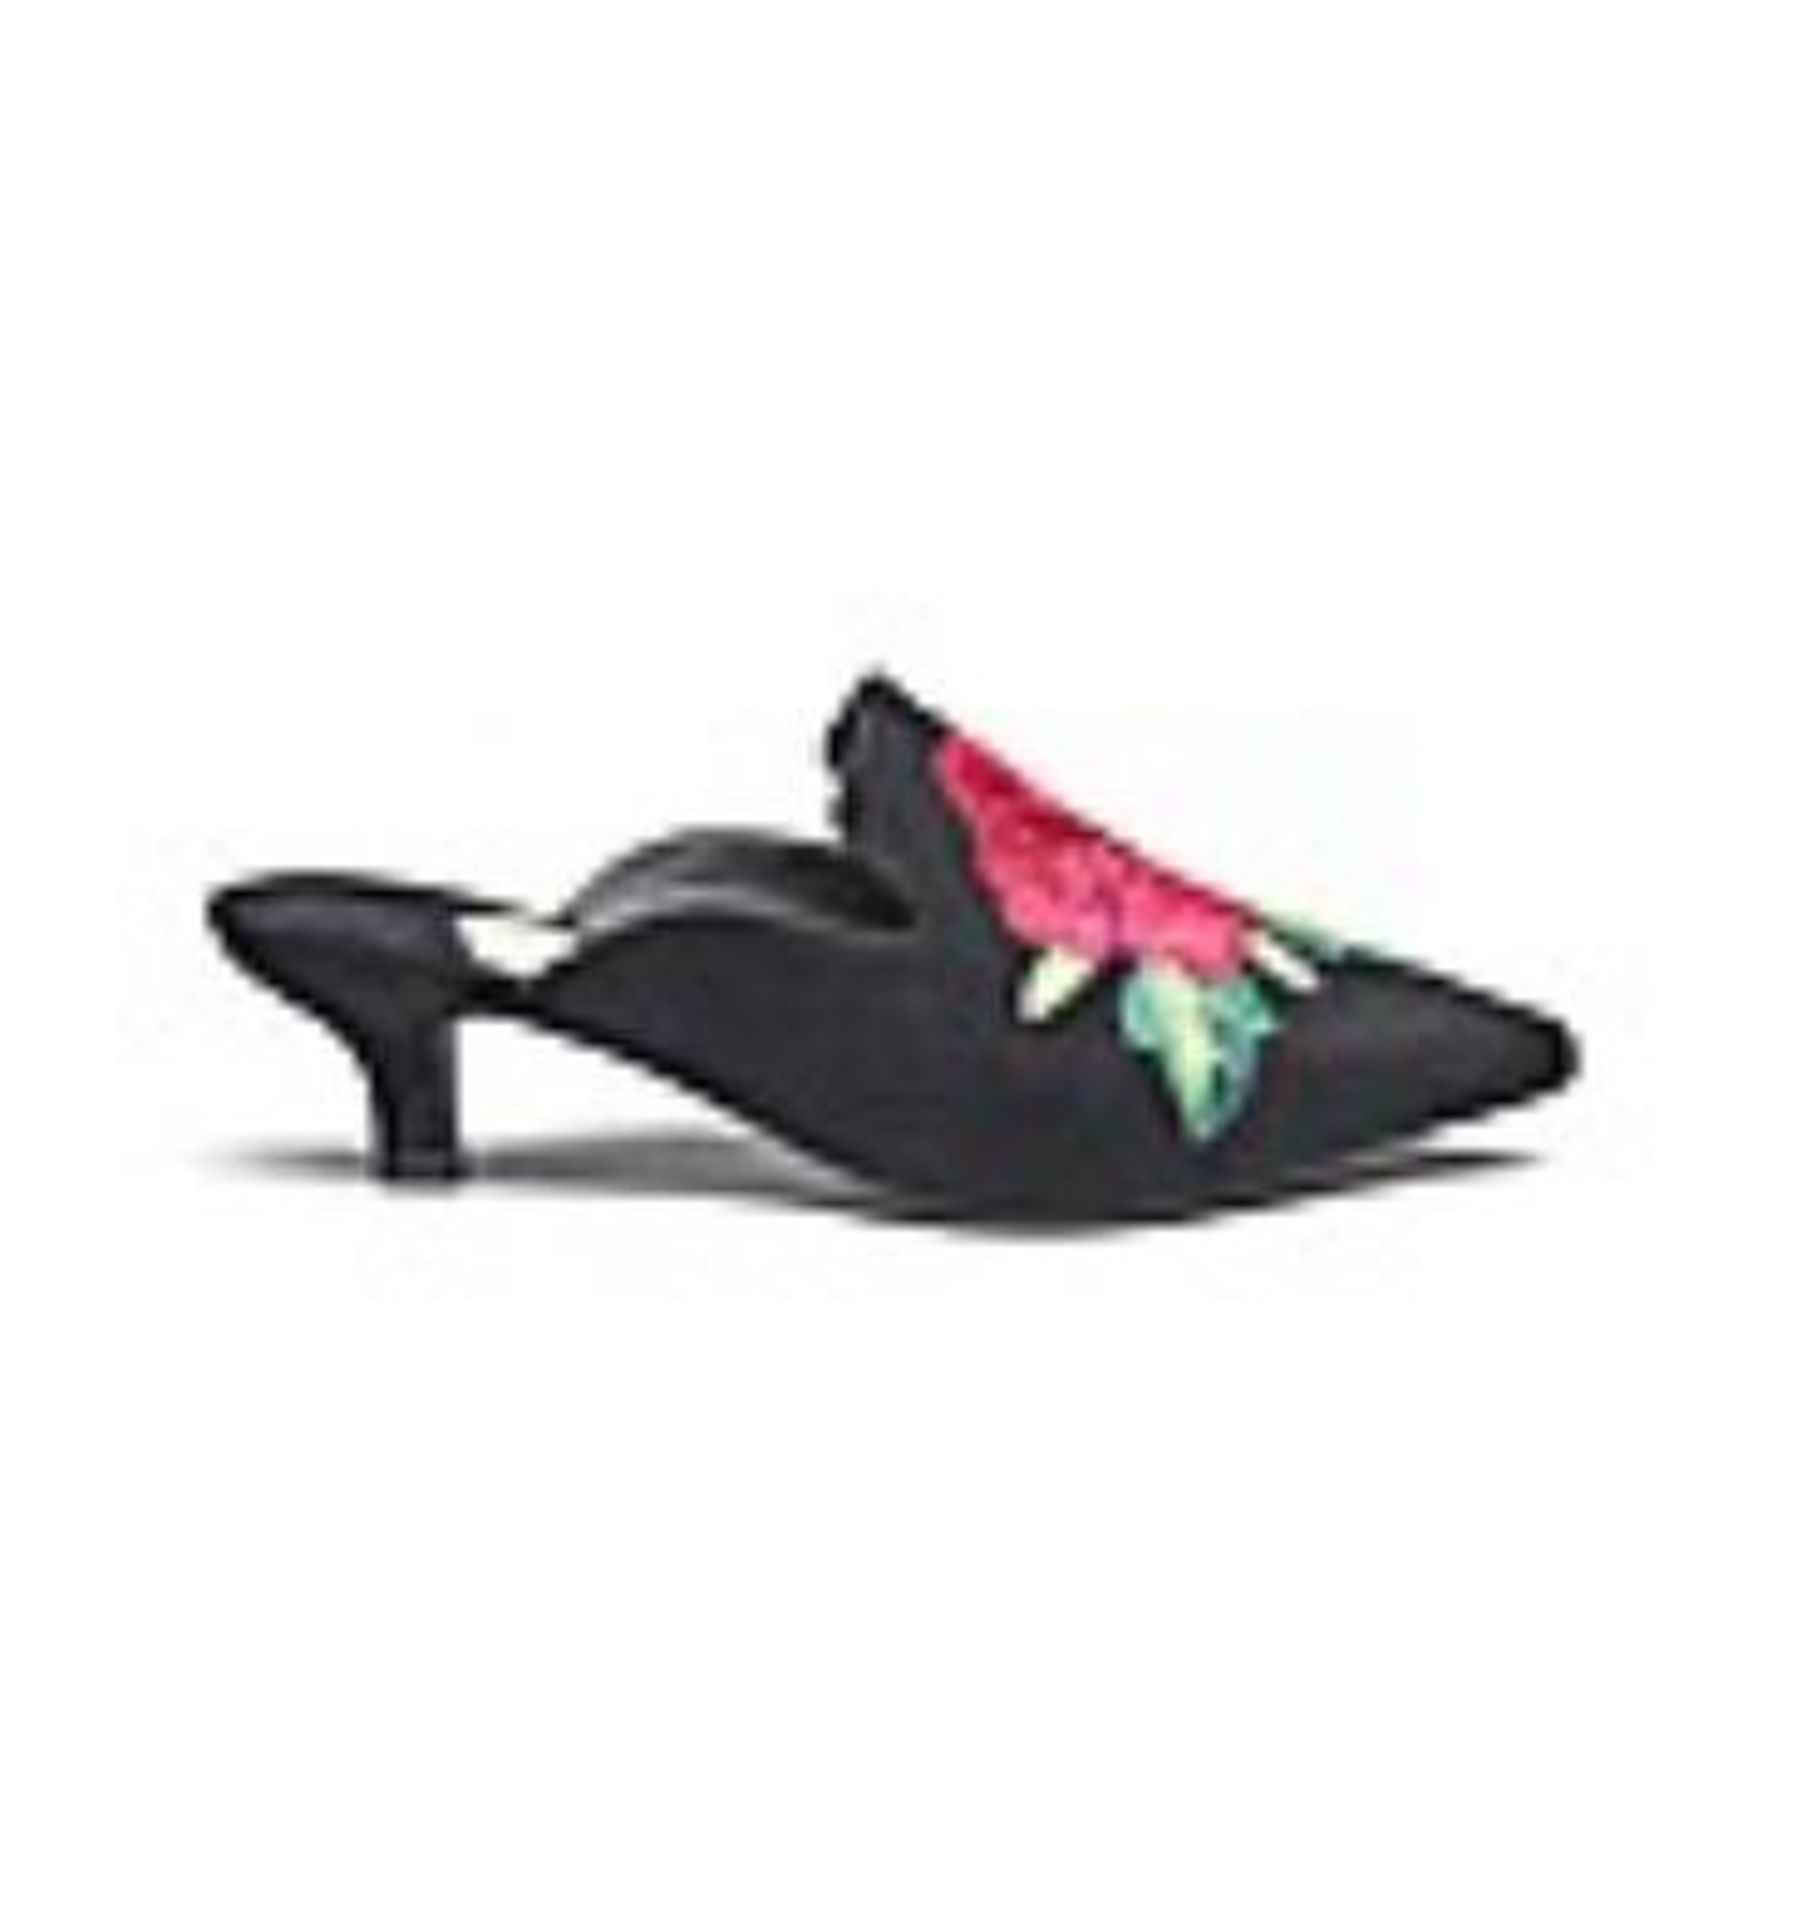 + VAT Brand New Pair Ladies Black EEE Fit Shoes Size 4